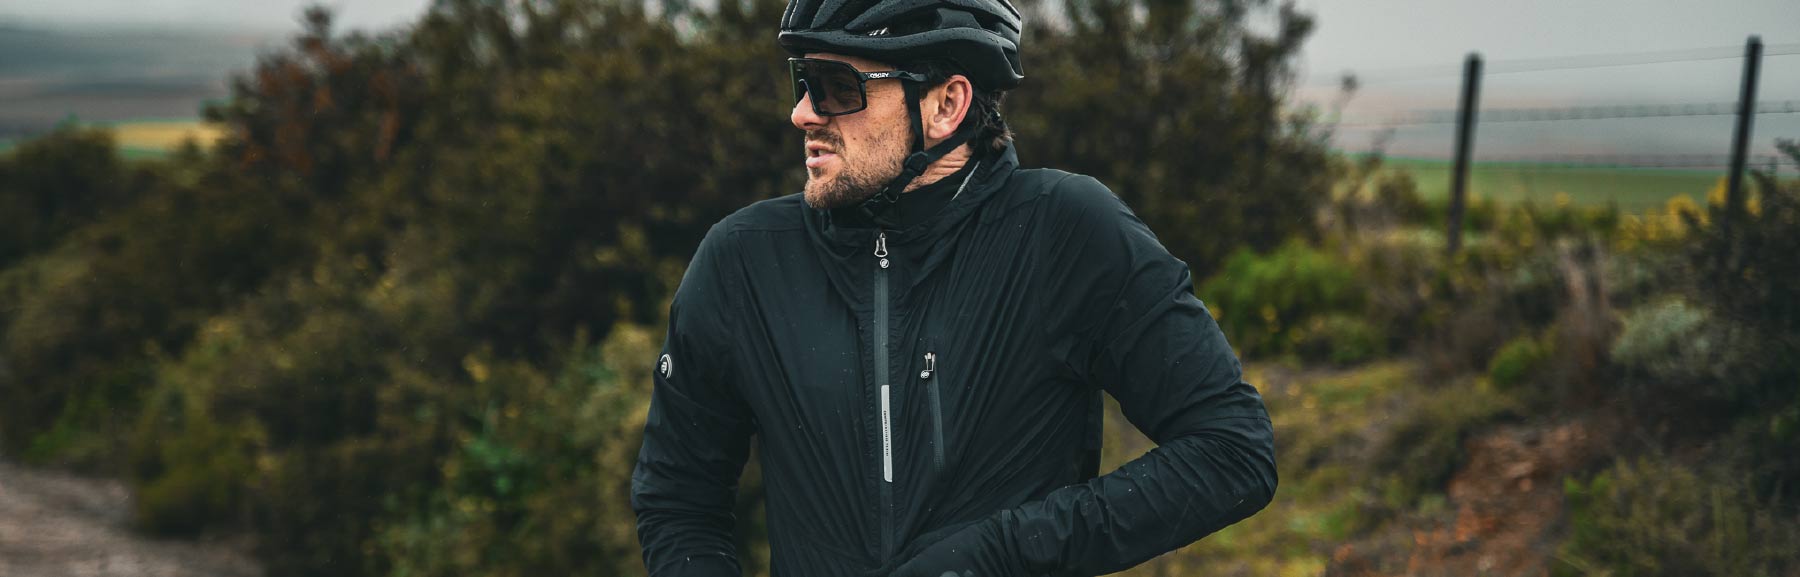 Men's Cycling Jackets and Gilets - Ciovita Australia